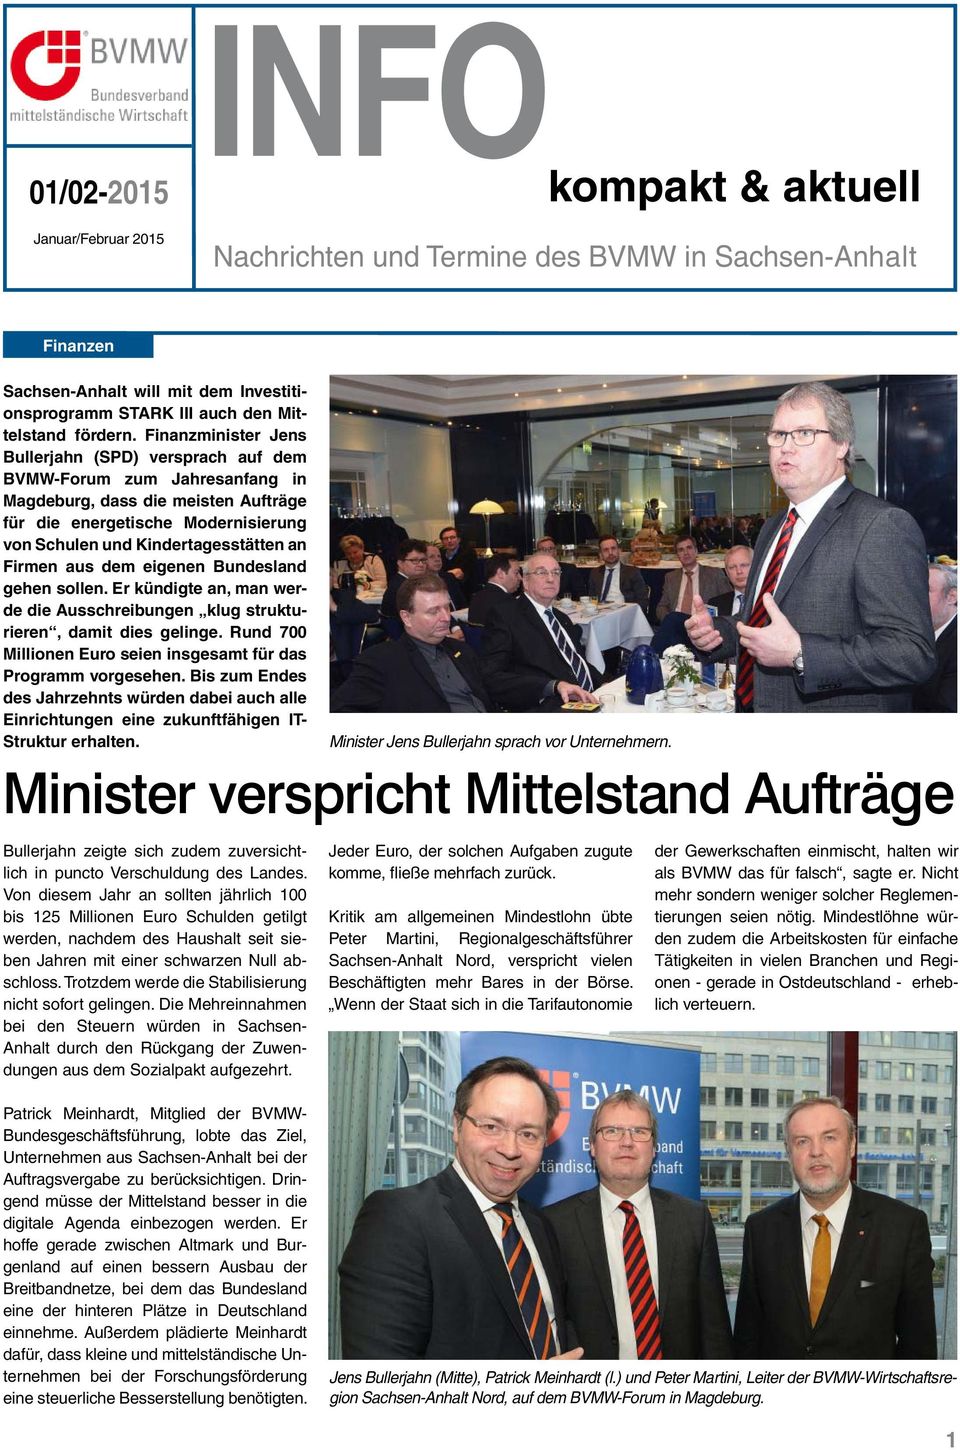 Finanzminister Jens Bullerjahn (SPD) versprach auf dem BVMW-Forum zum Jahresanfang in Magdeburg, dass die meisten Aufträge für die energetische Modernisierung von Schulen und Kindertagesstätten an